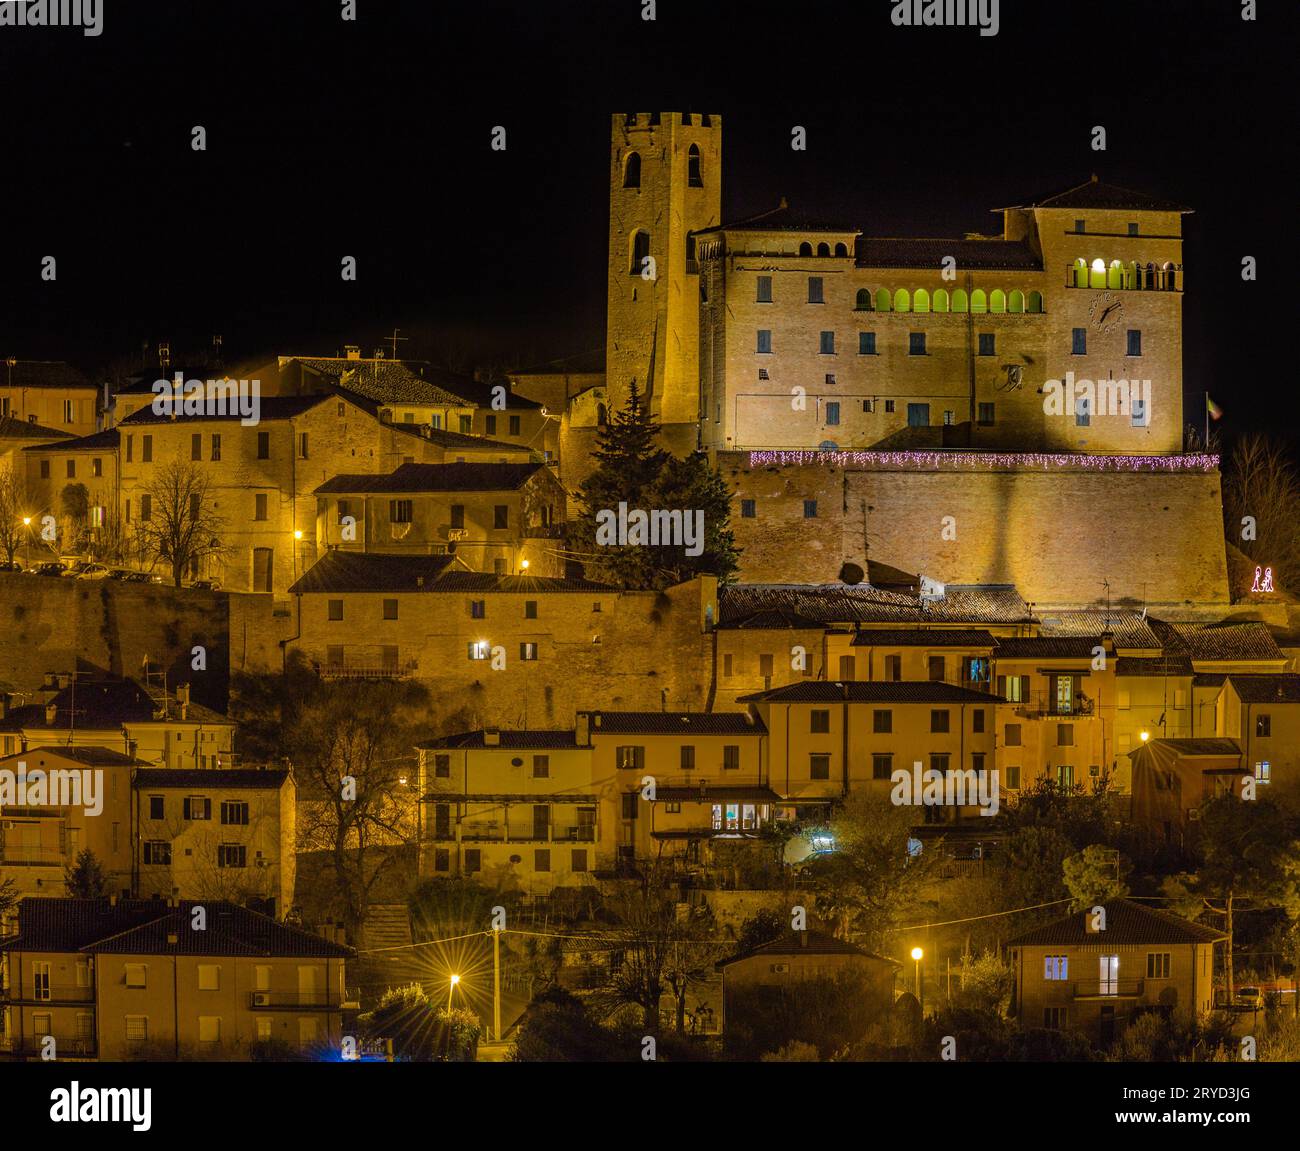 Village médiéval sur une colline rocheuse en Italie pendant la nuit Banque D'Images